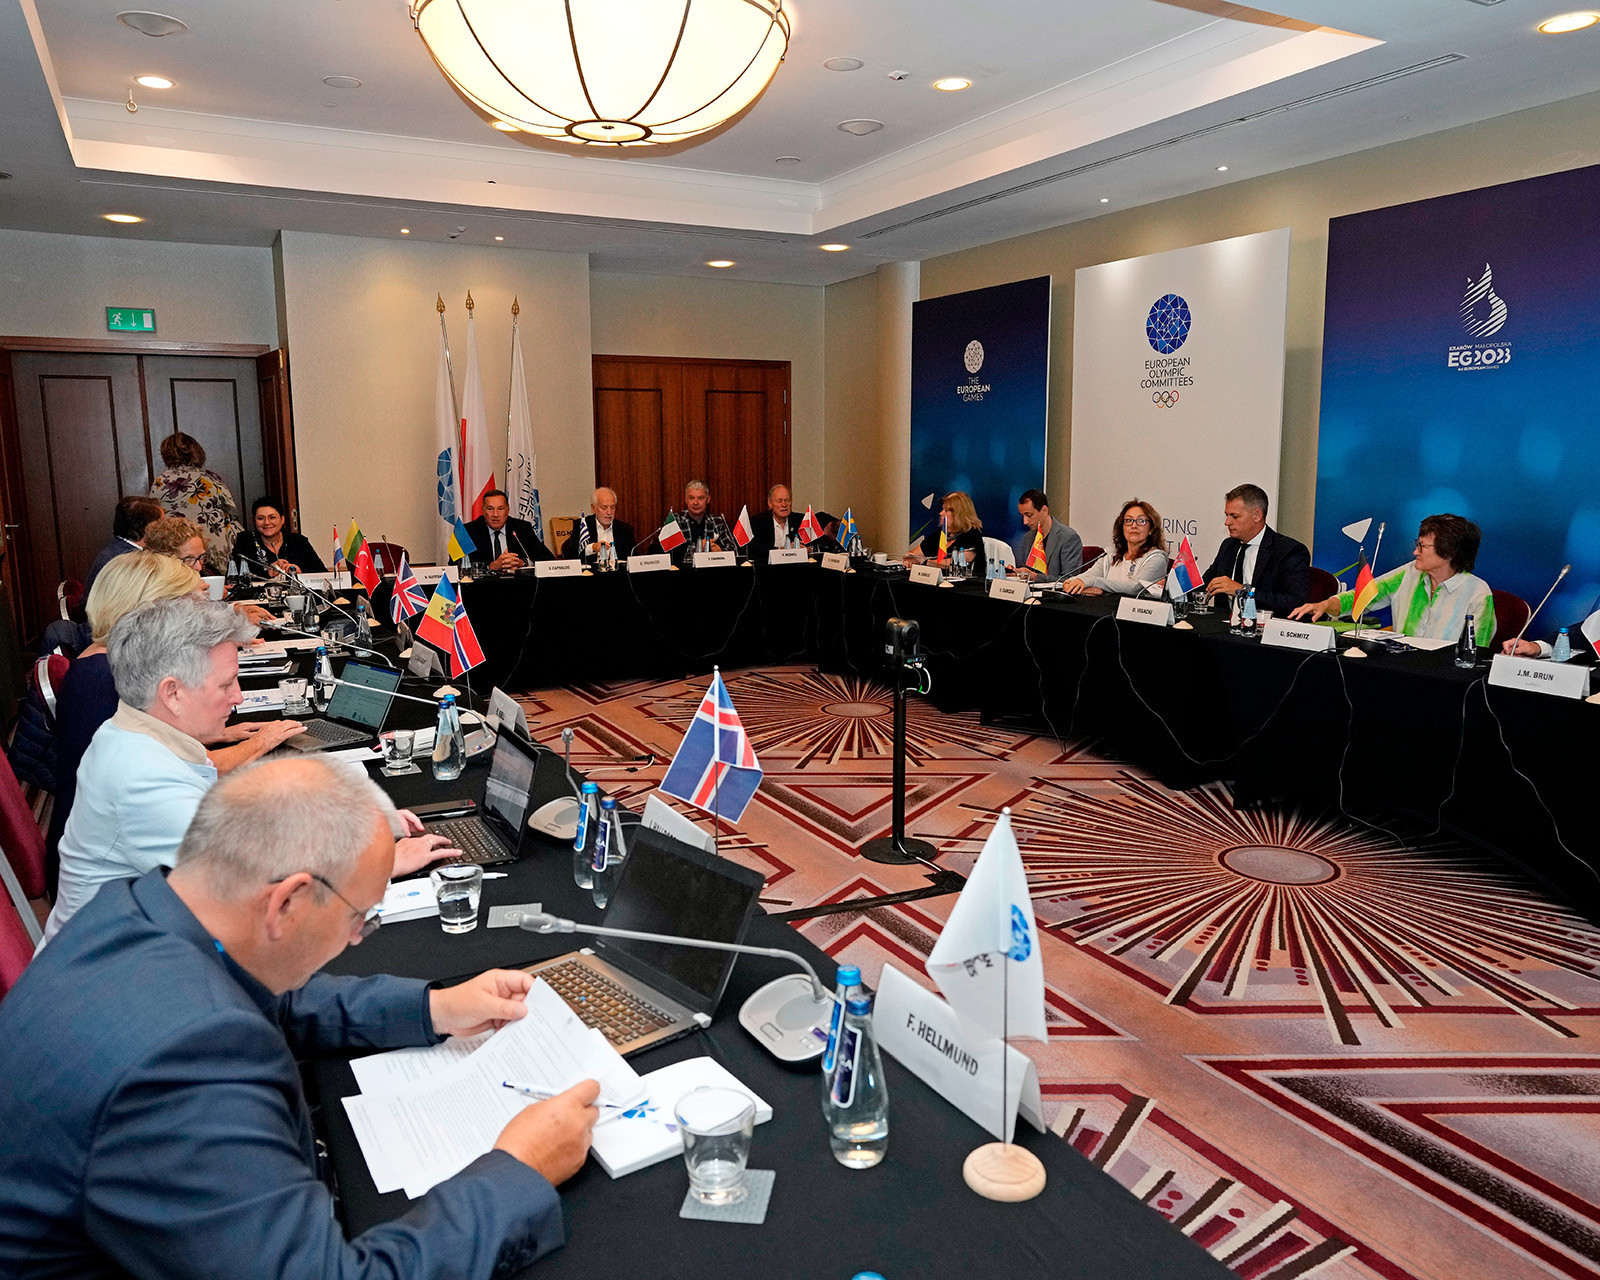 Gutzeit urged to avoid Ukrainian boycotts on invitation to EOC Executive Committee meeting